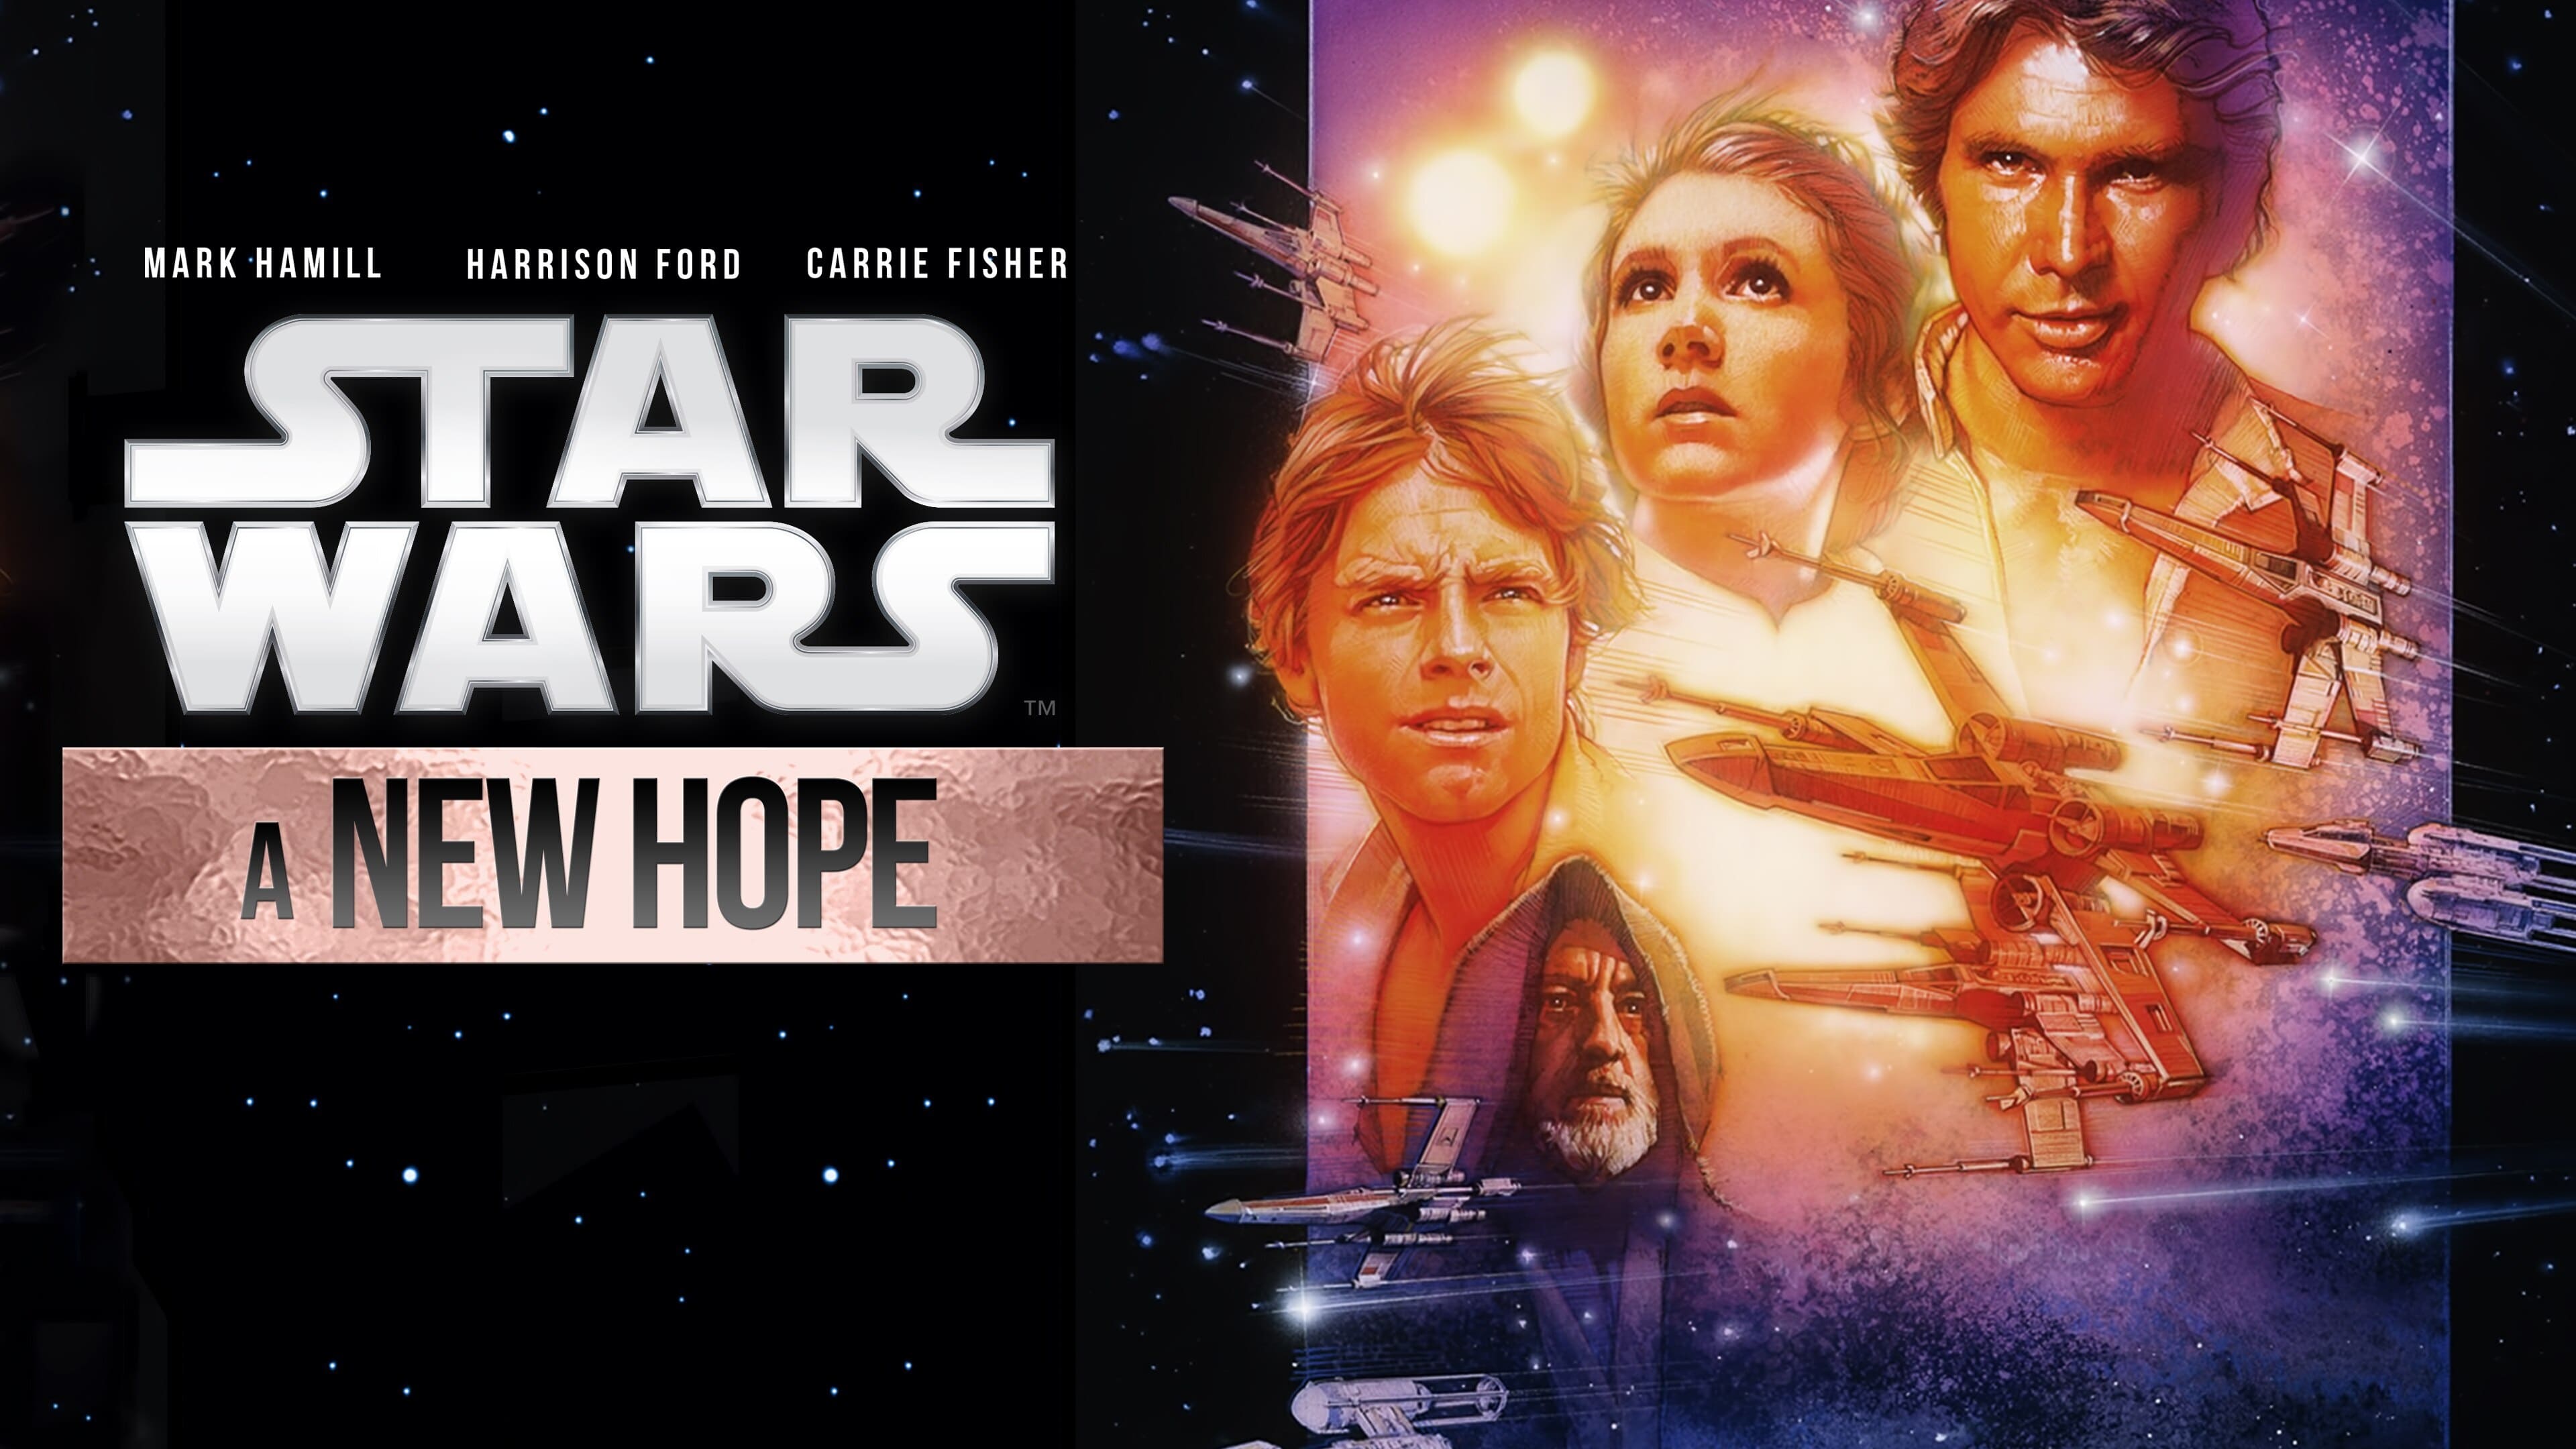 Star Wars Episodio IV: Una nueva esperanza